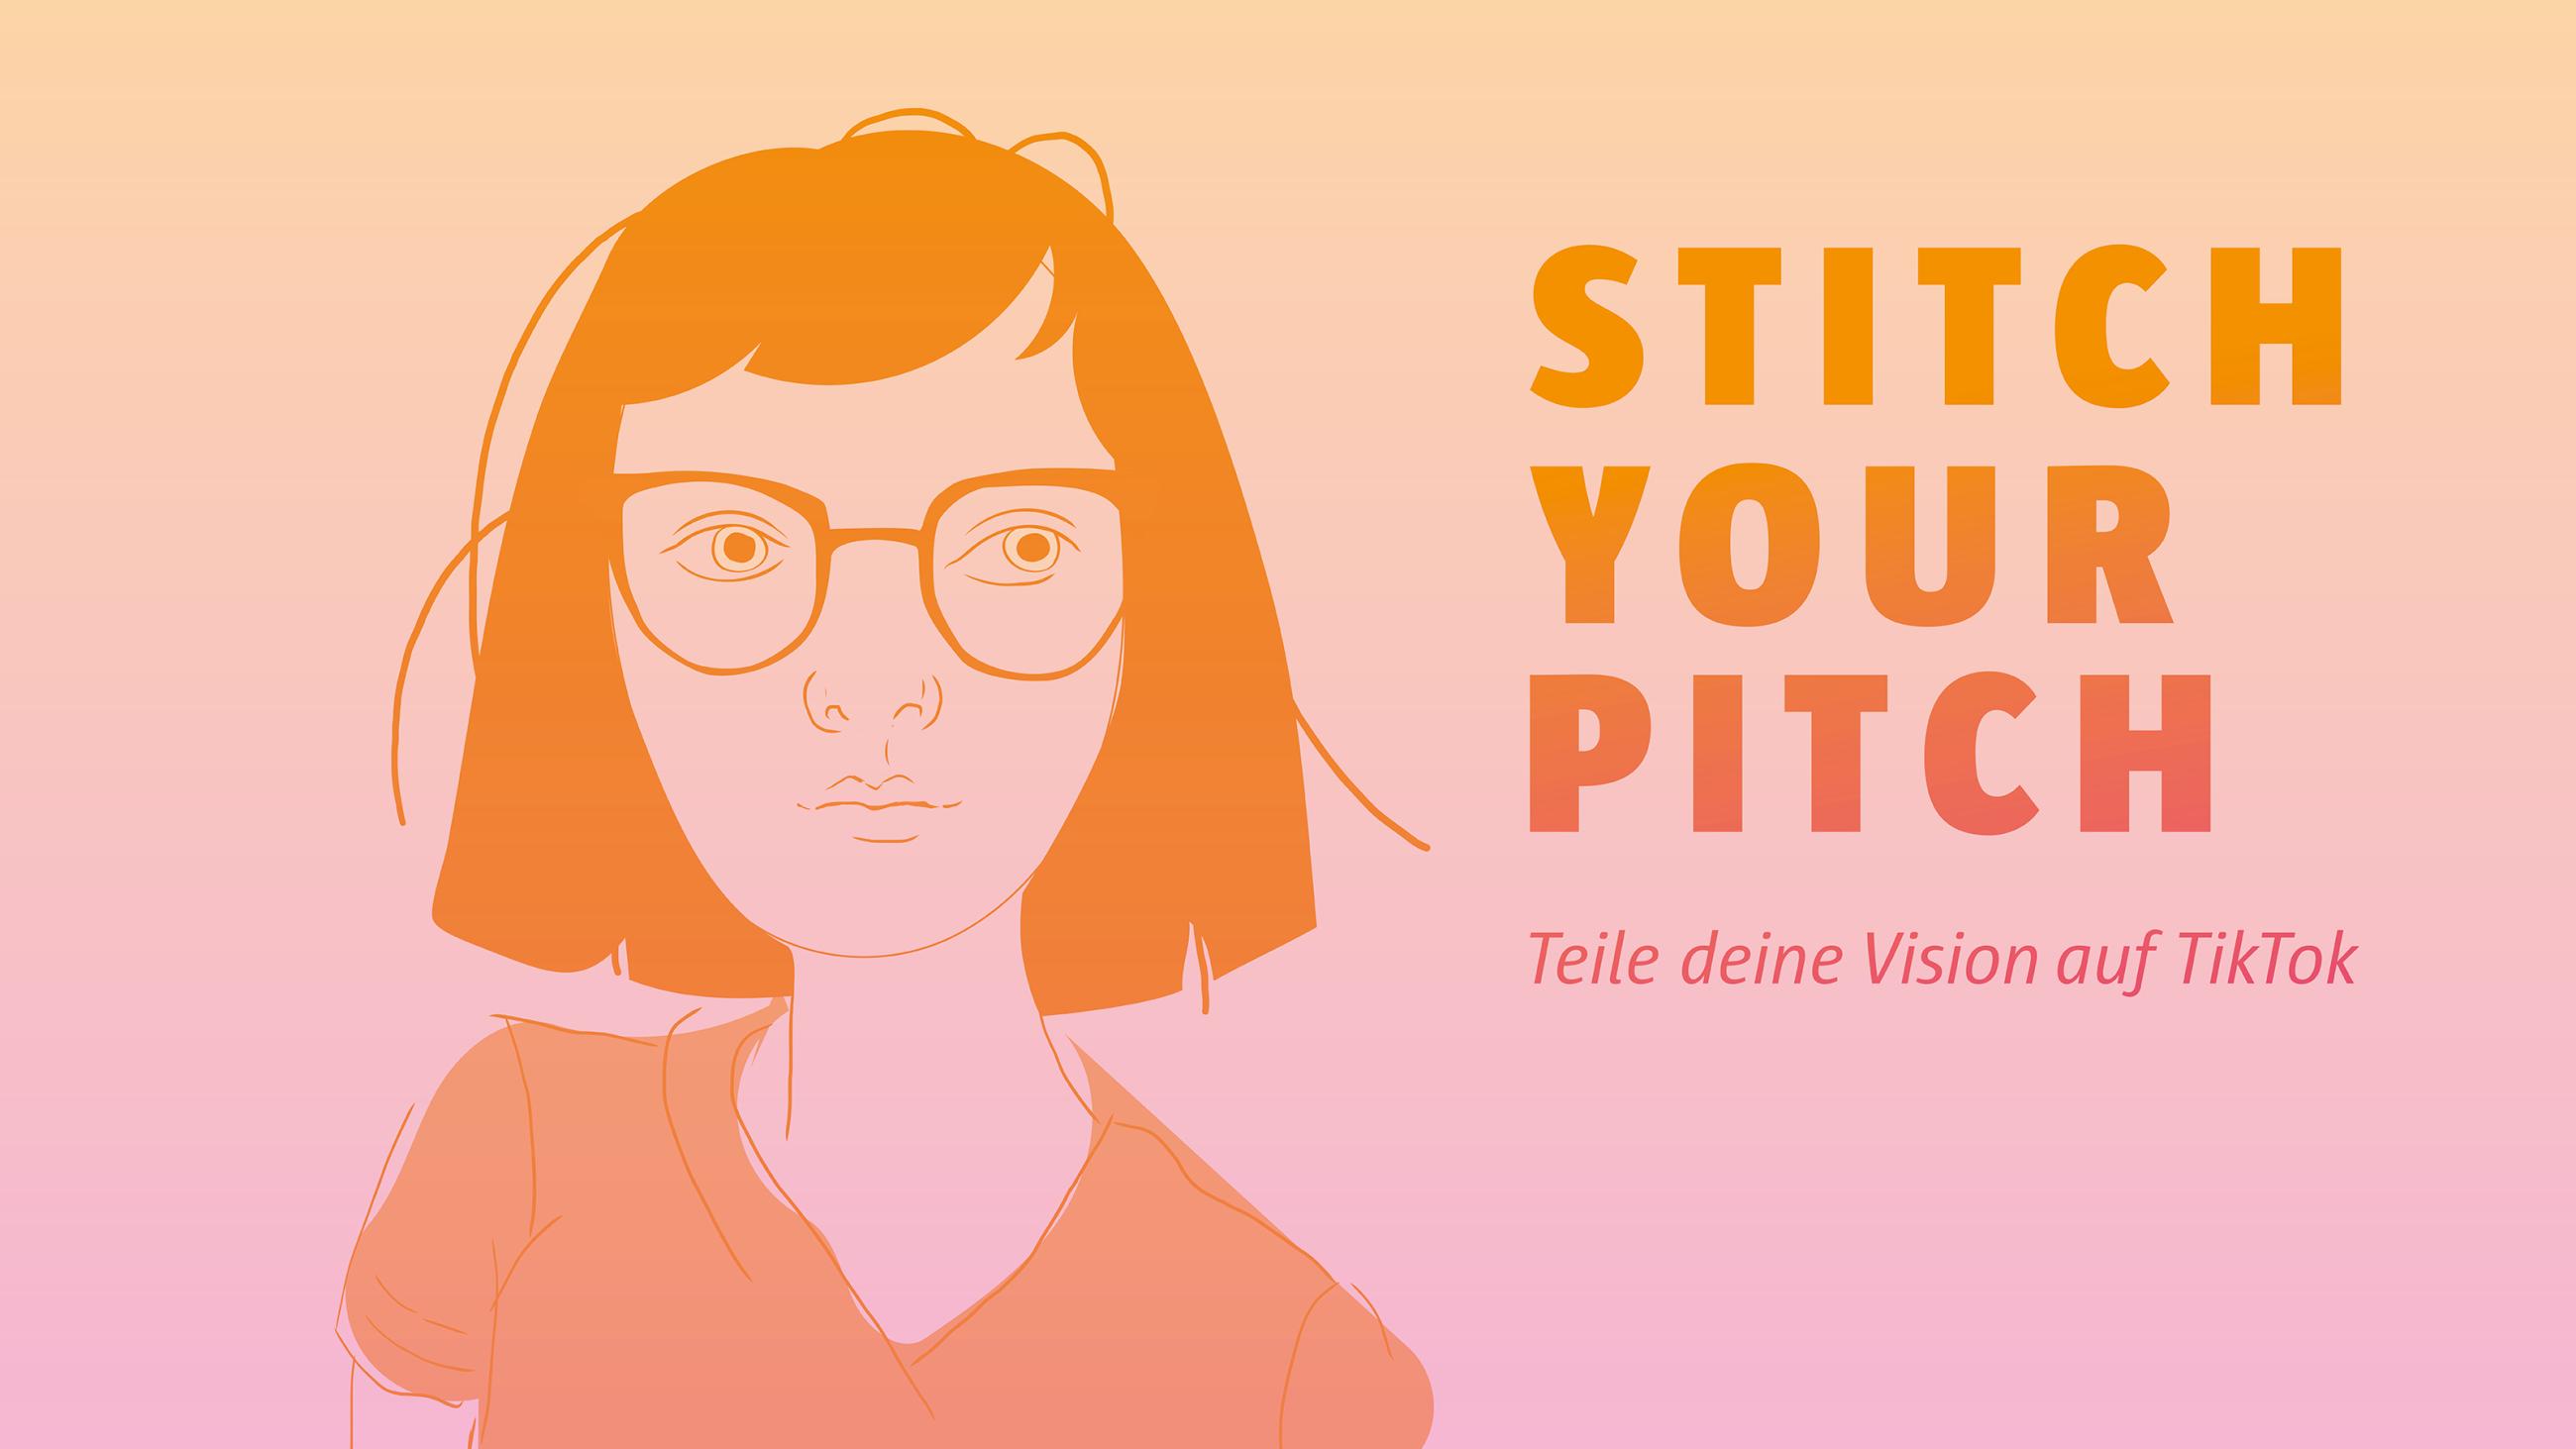 Illustrierte Frau mit nebenstehendem Text "Stich your Pitch - Teile deine Vision auf TikTok"